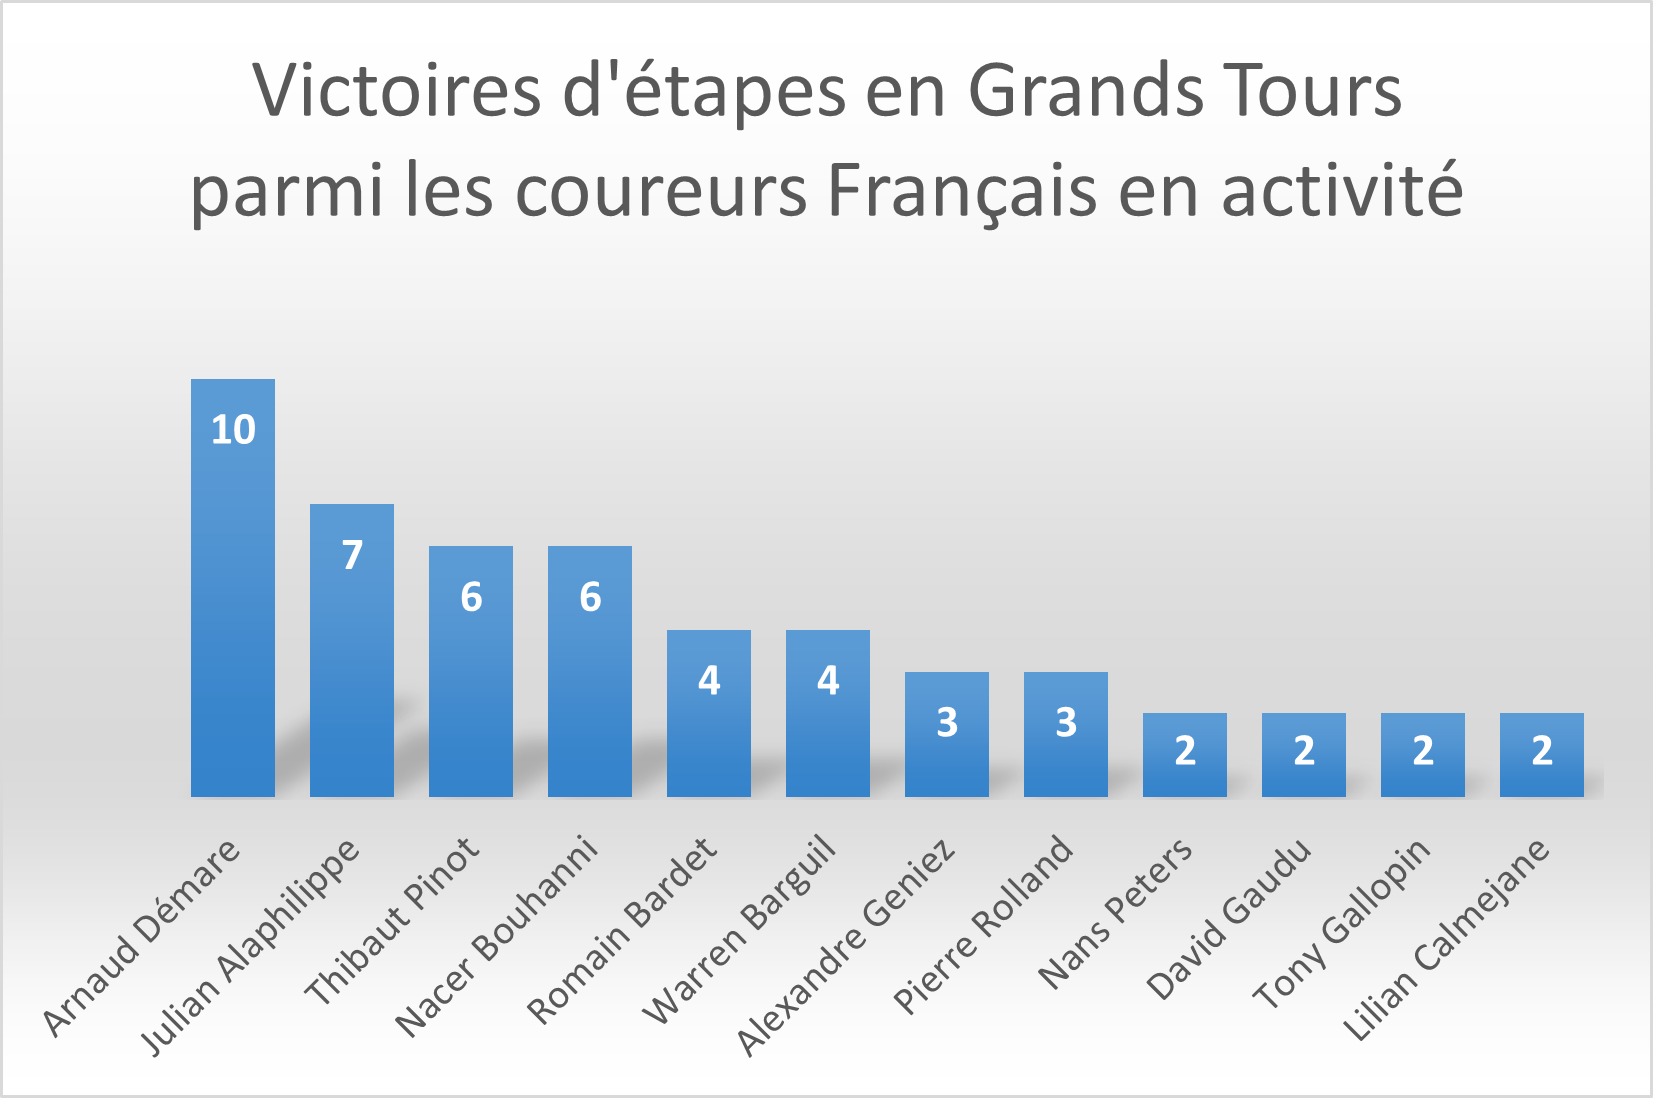 Victoires d'étapes en Grands Tours parmi les Français en activité